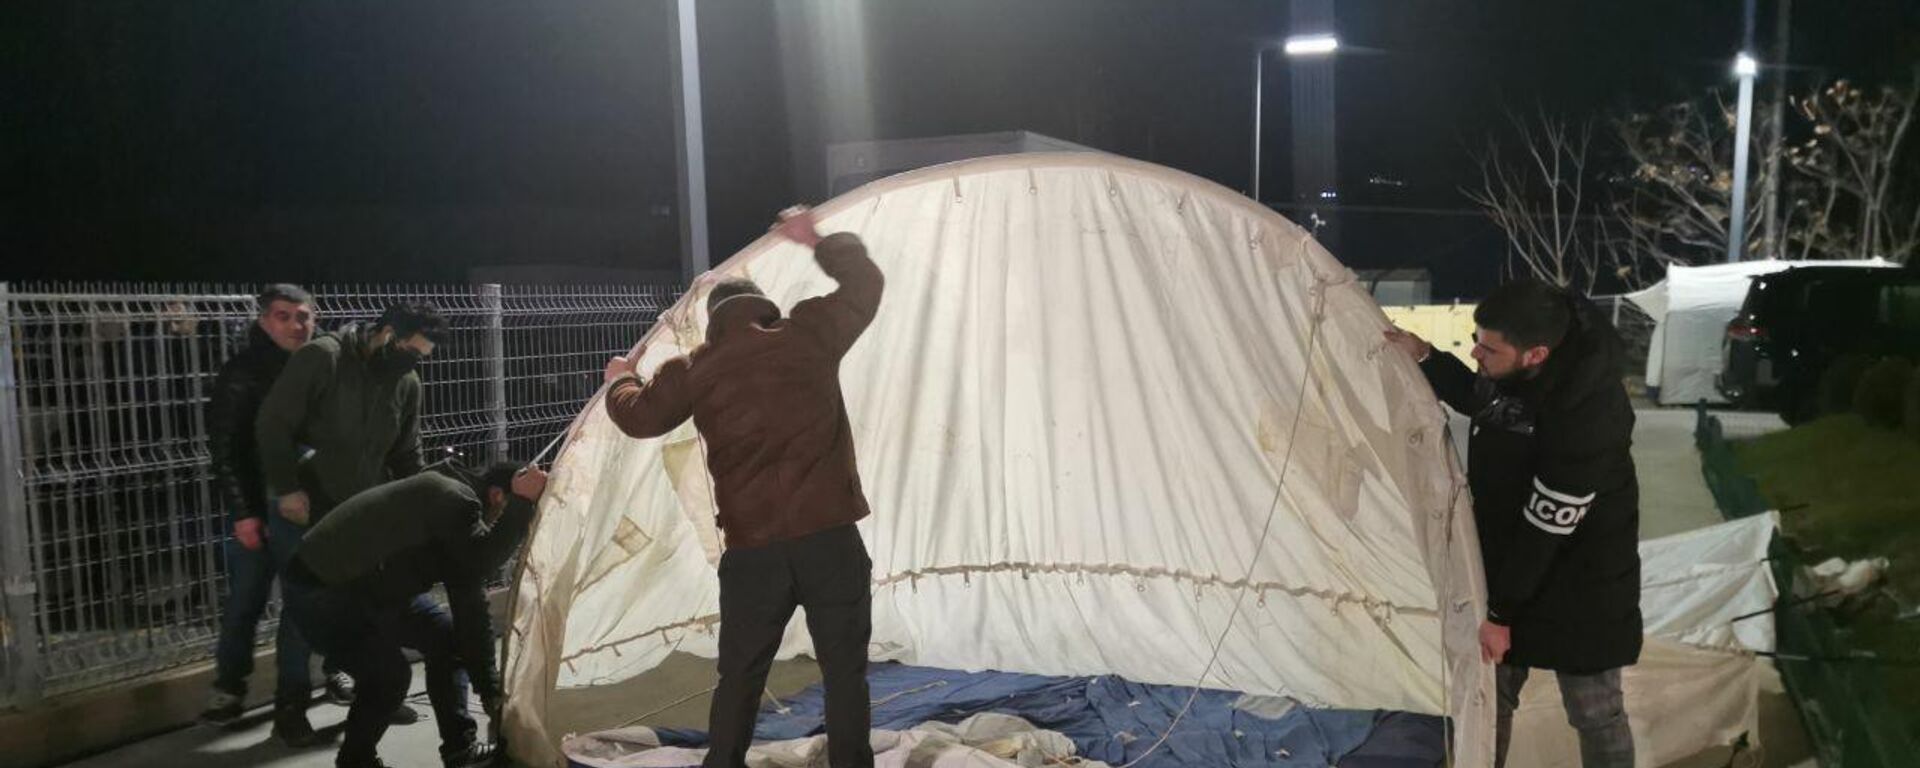 Представители ЕНД ставят палатки для голодающих у офиса Единого нацдвижения 21 декабря 2021 года - Sputnik Грузия, 1920, 22.12.2021